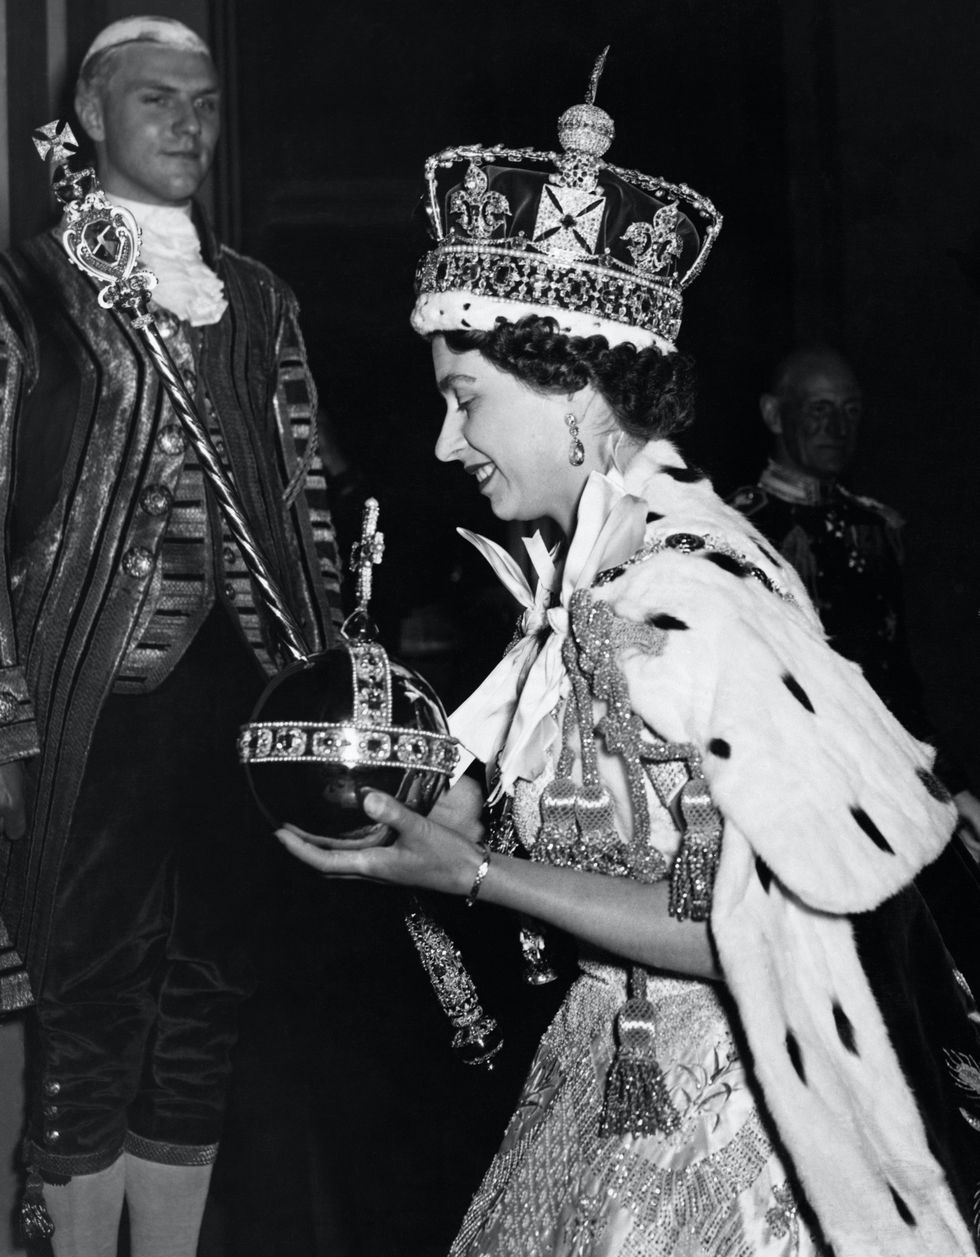 queen elizabeth ii's coronation in 1953